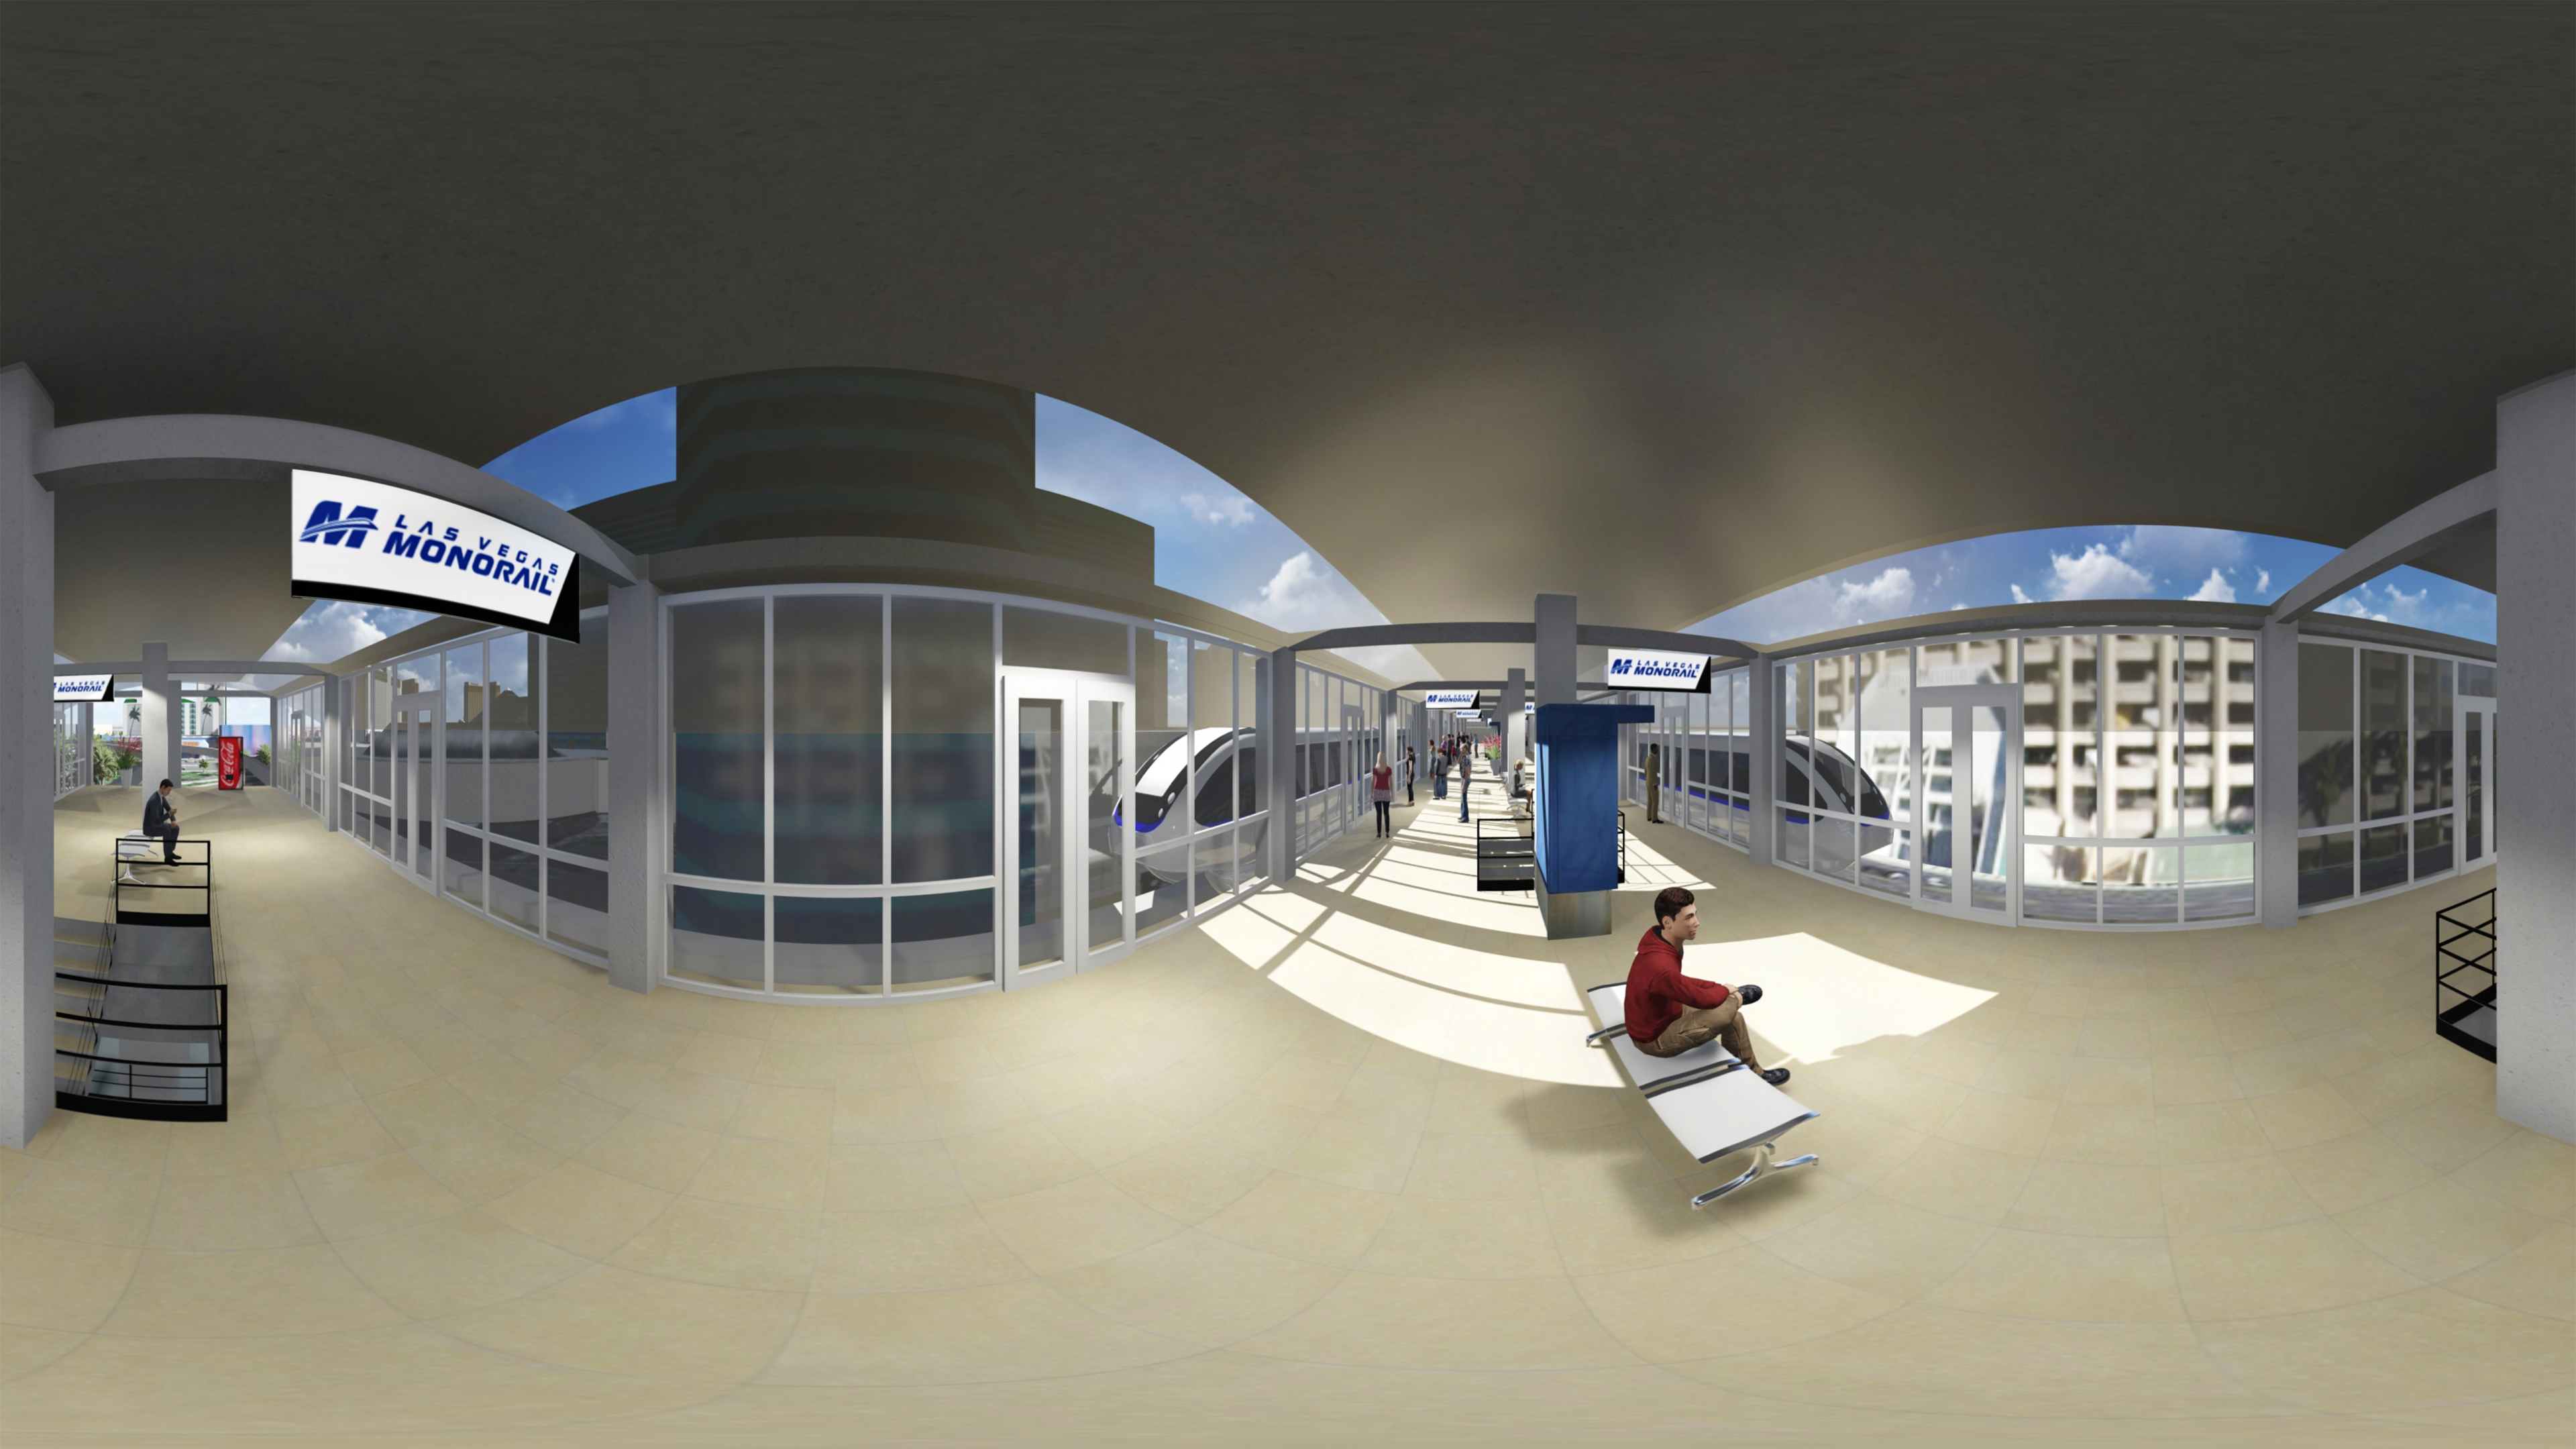 monorail virtual reality